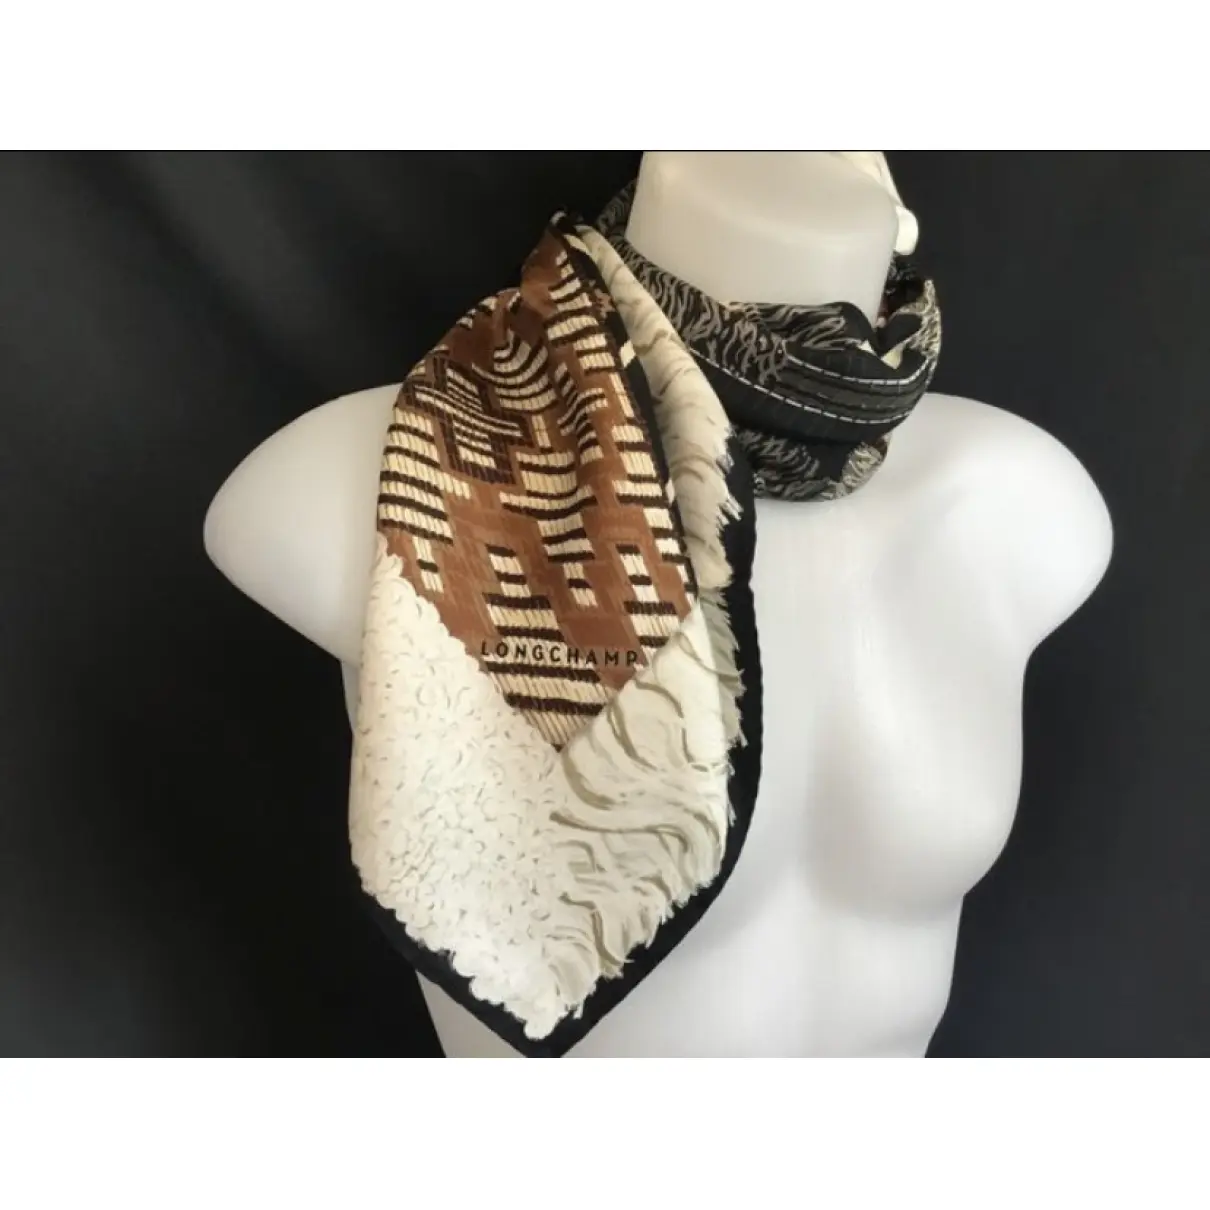 Buy Longchamp Silk neckerchief online